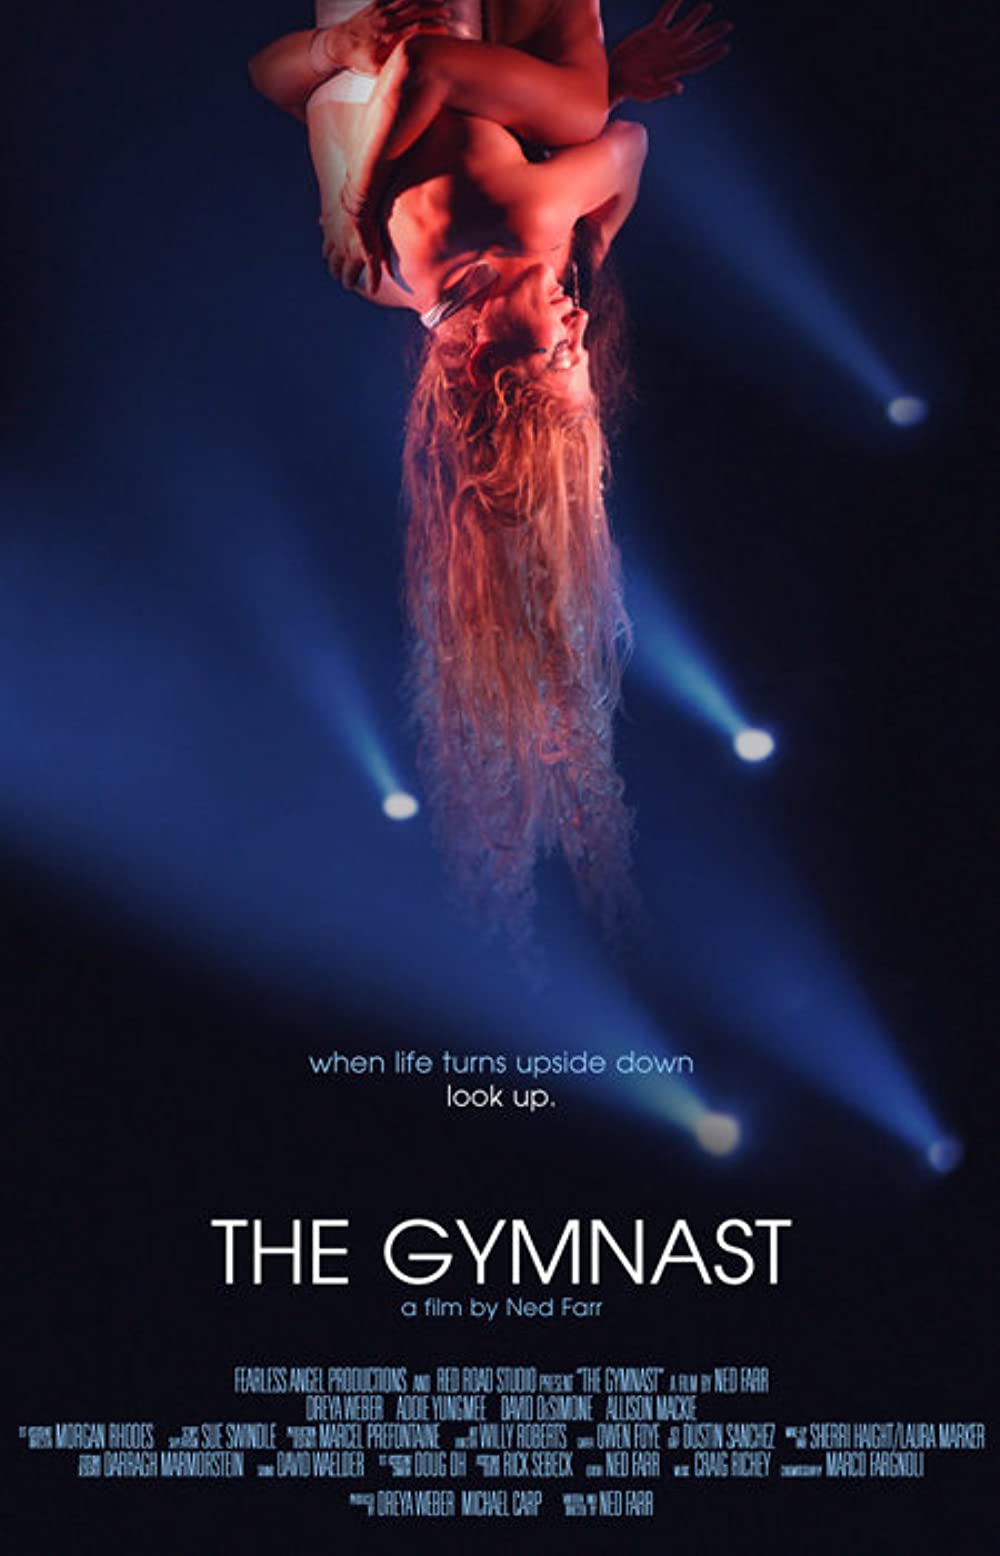 Filmbeschreibung zu The Gymnast